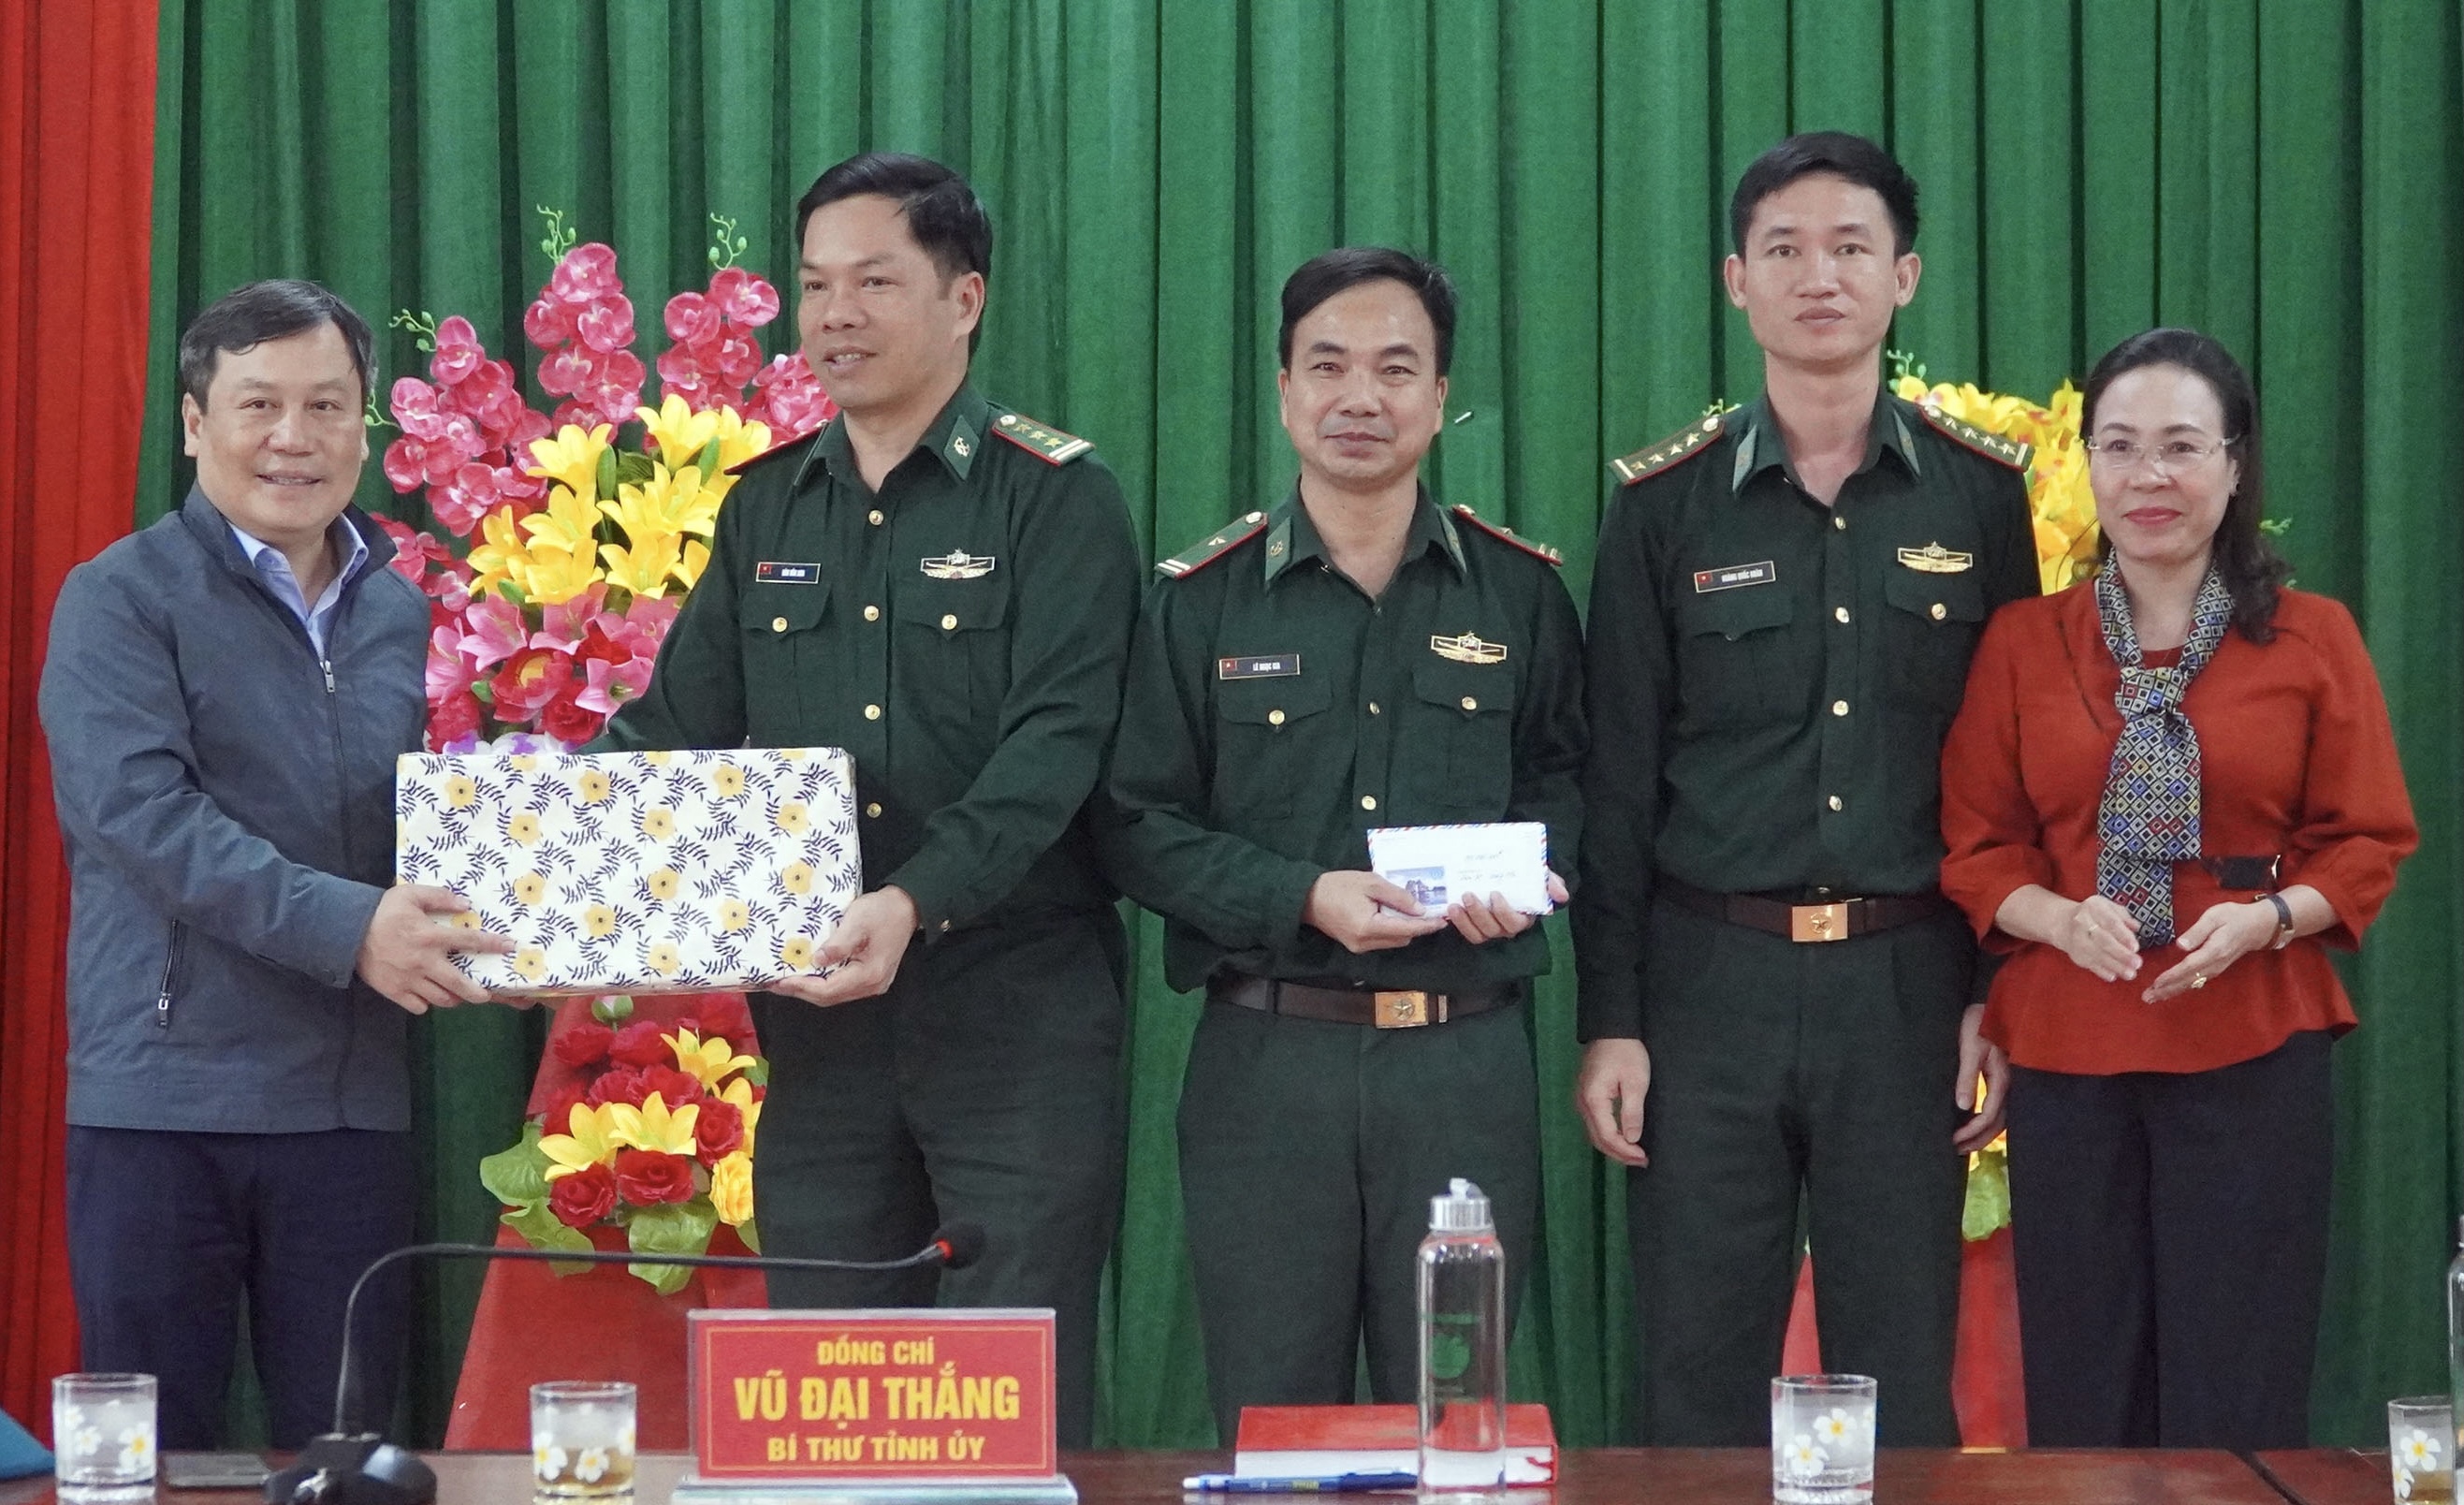 Đồng chí Bí thư Tỉnh ủy Vũ Đại Thắng thăm và tặng quà cán bộ, chiến sỹ Đồn Biên phòng Làng Ho.